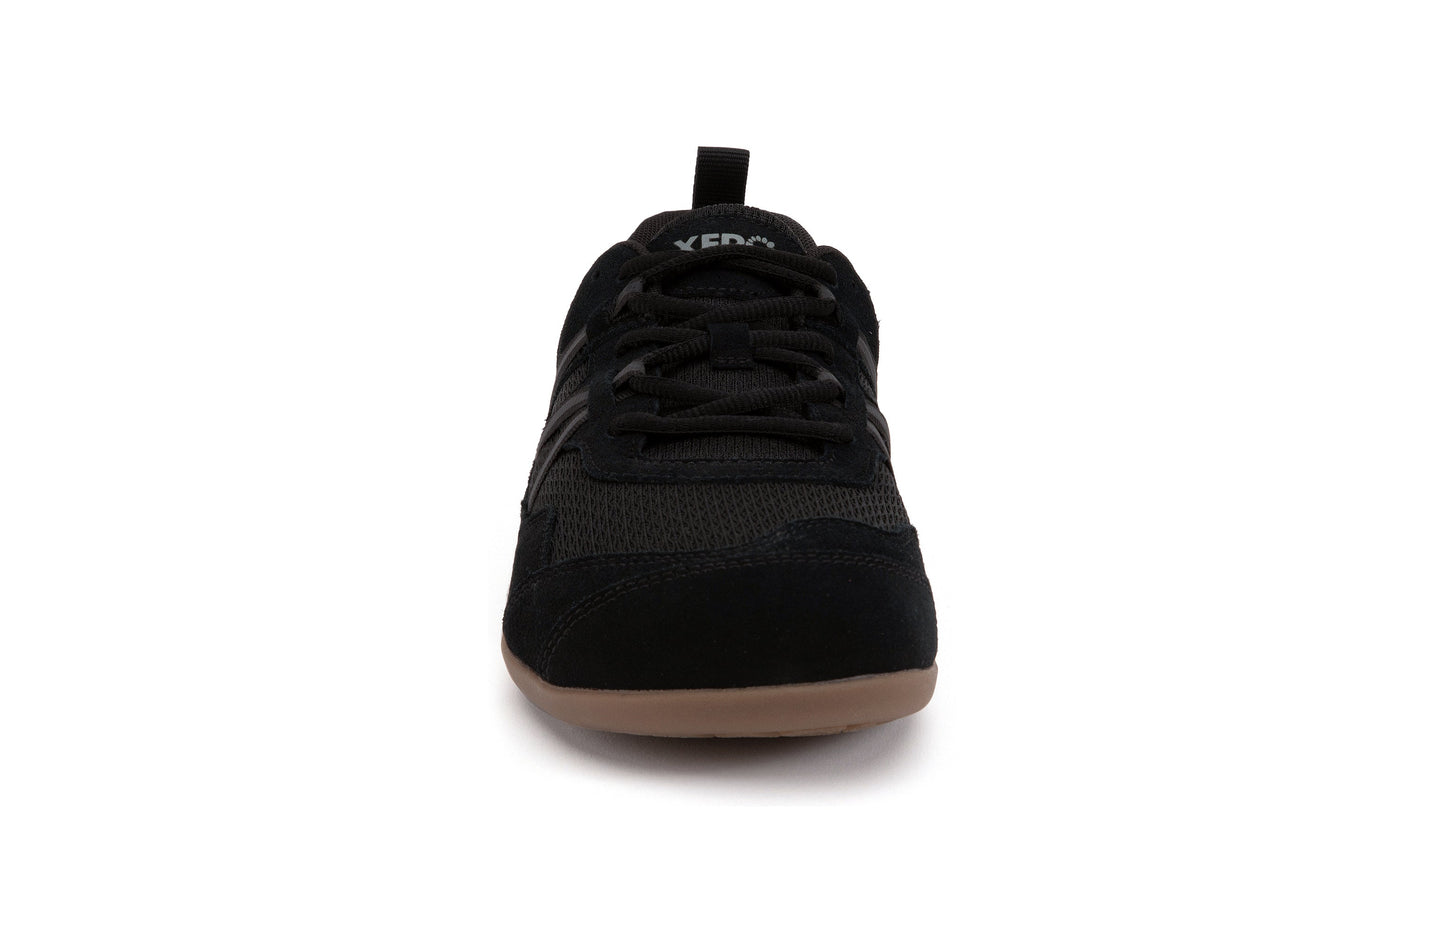 Xero Shoes Prio Suede barfods ruskind sneakers til mænd i farven black gum, forfra